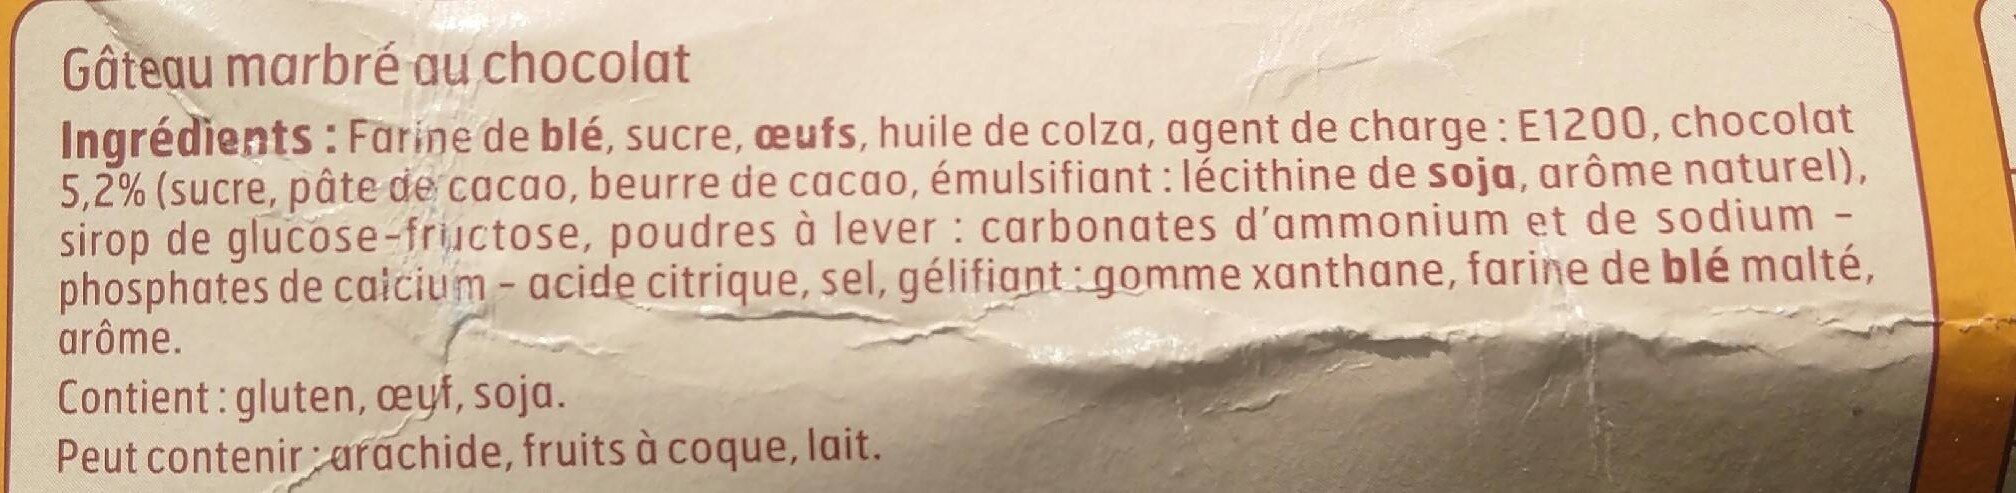 Marbre Chocolat 300G Belle France - Tableau nutritionnel